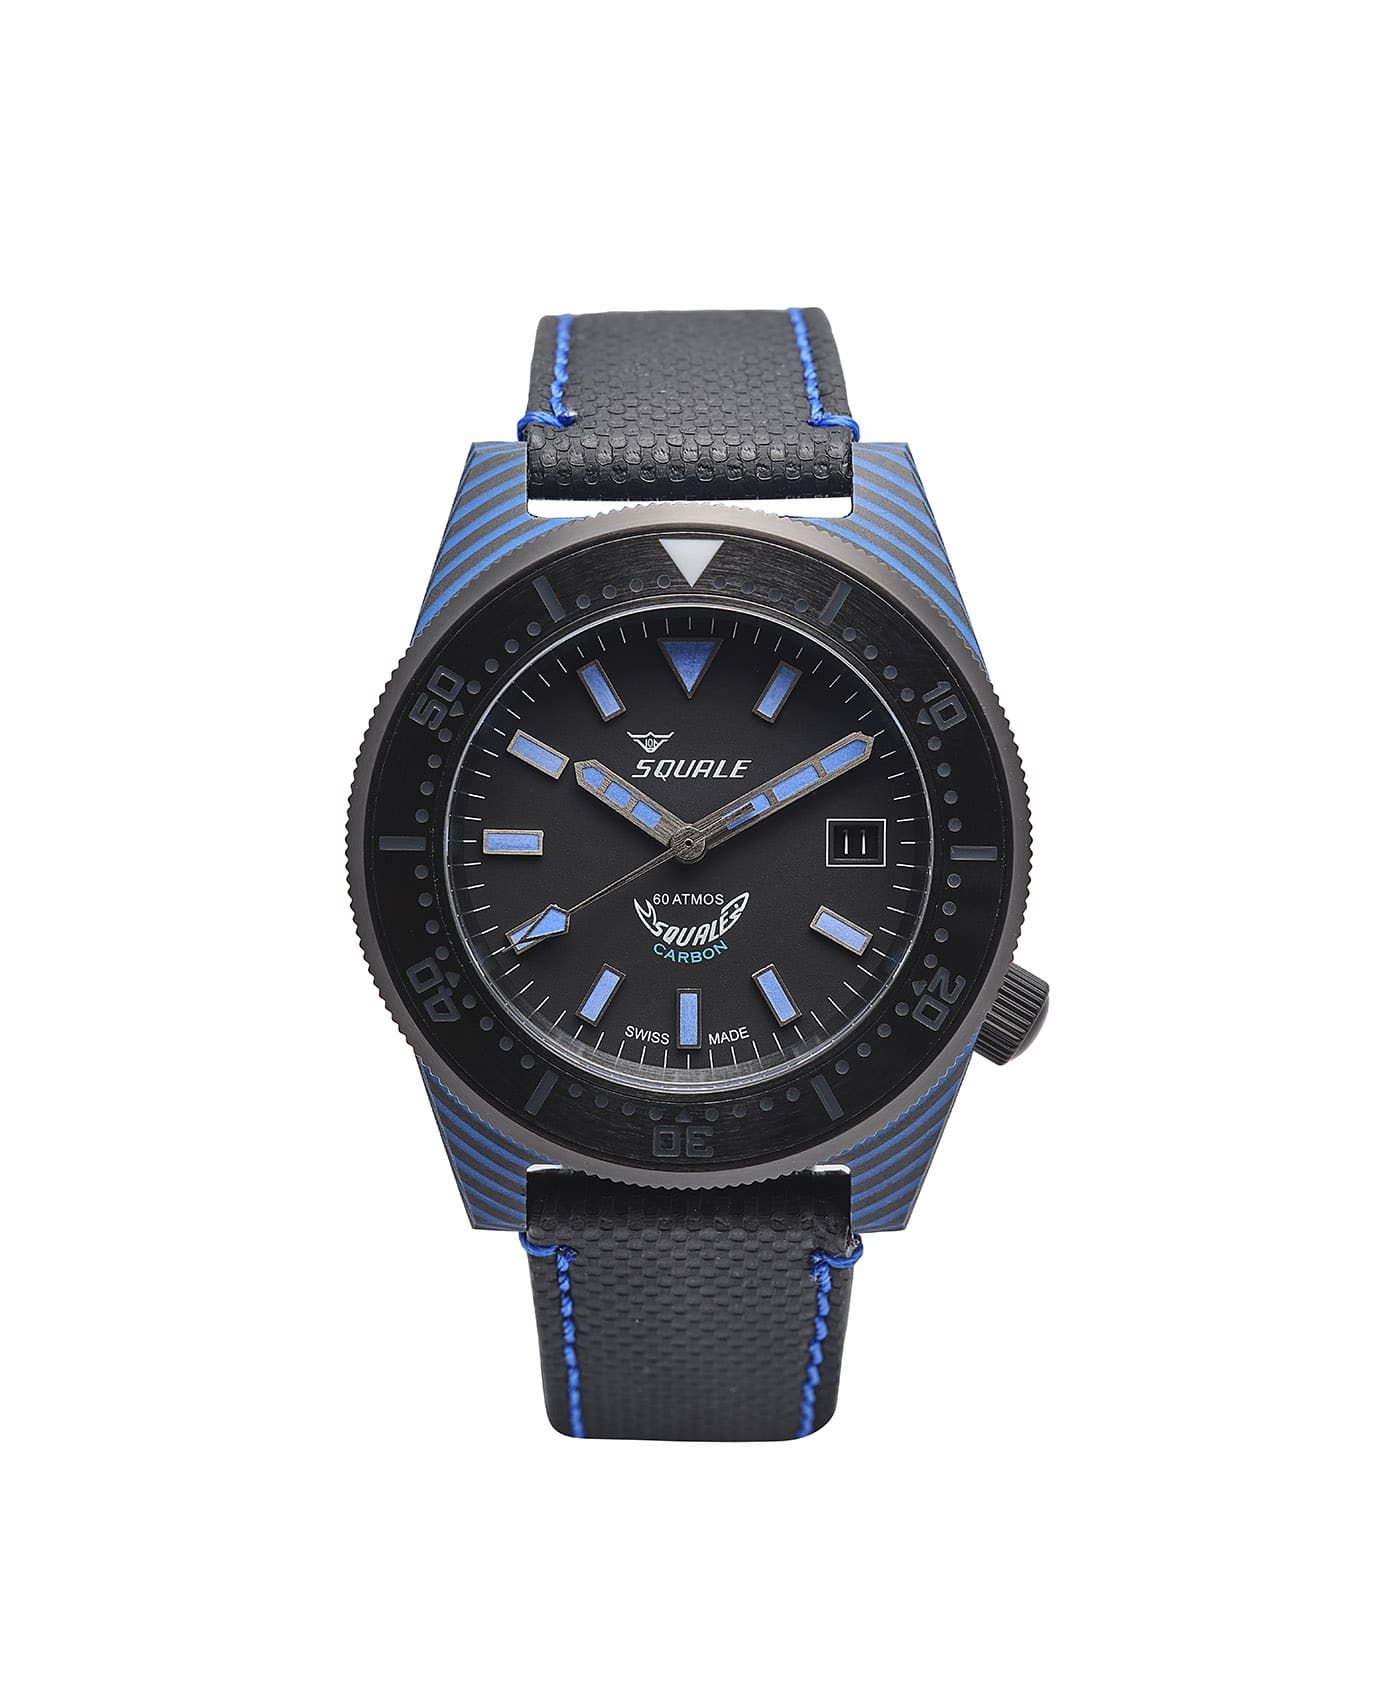 Squale T183 Diver carbon fiberglass case watch front